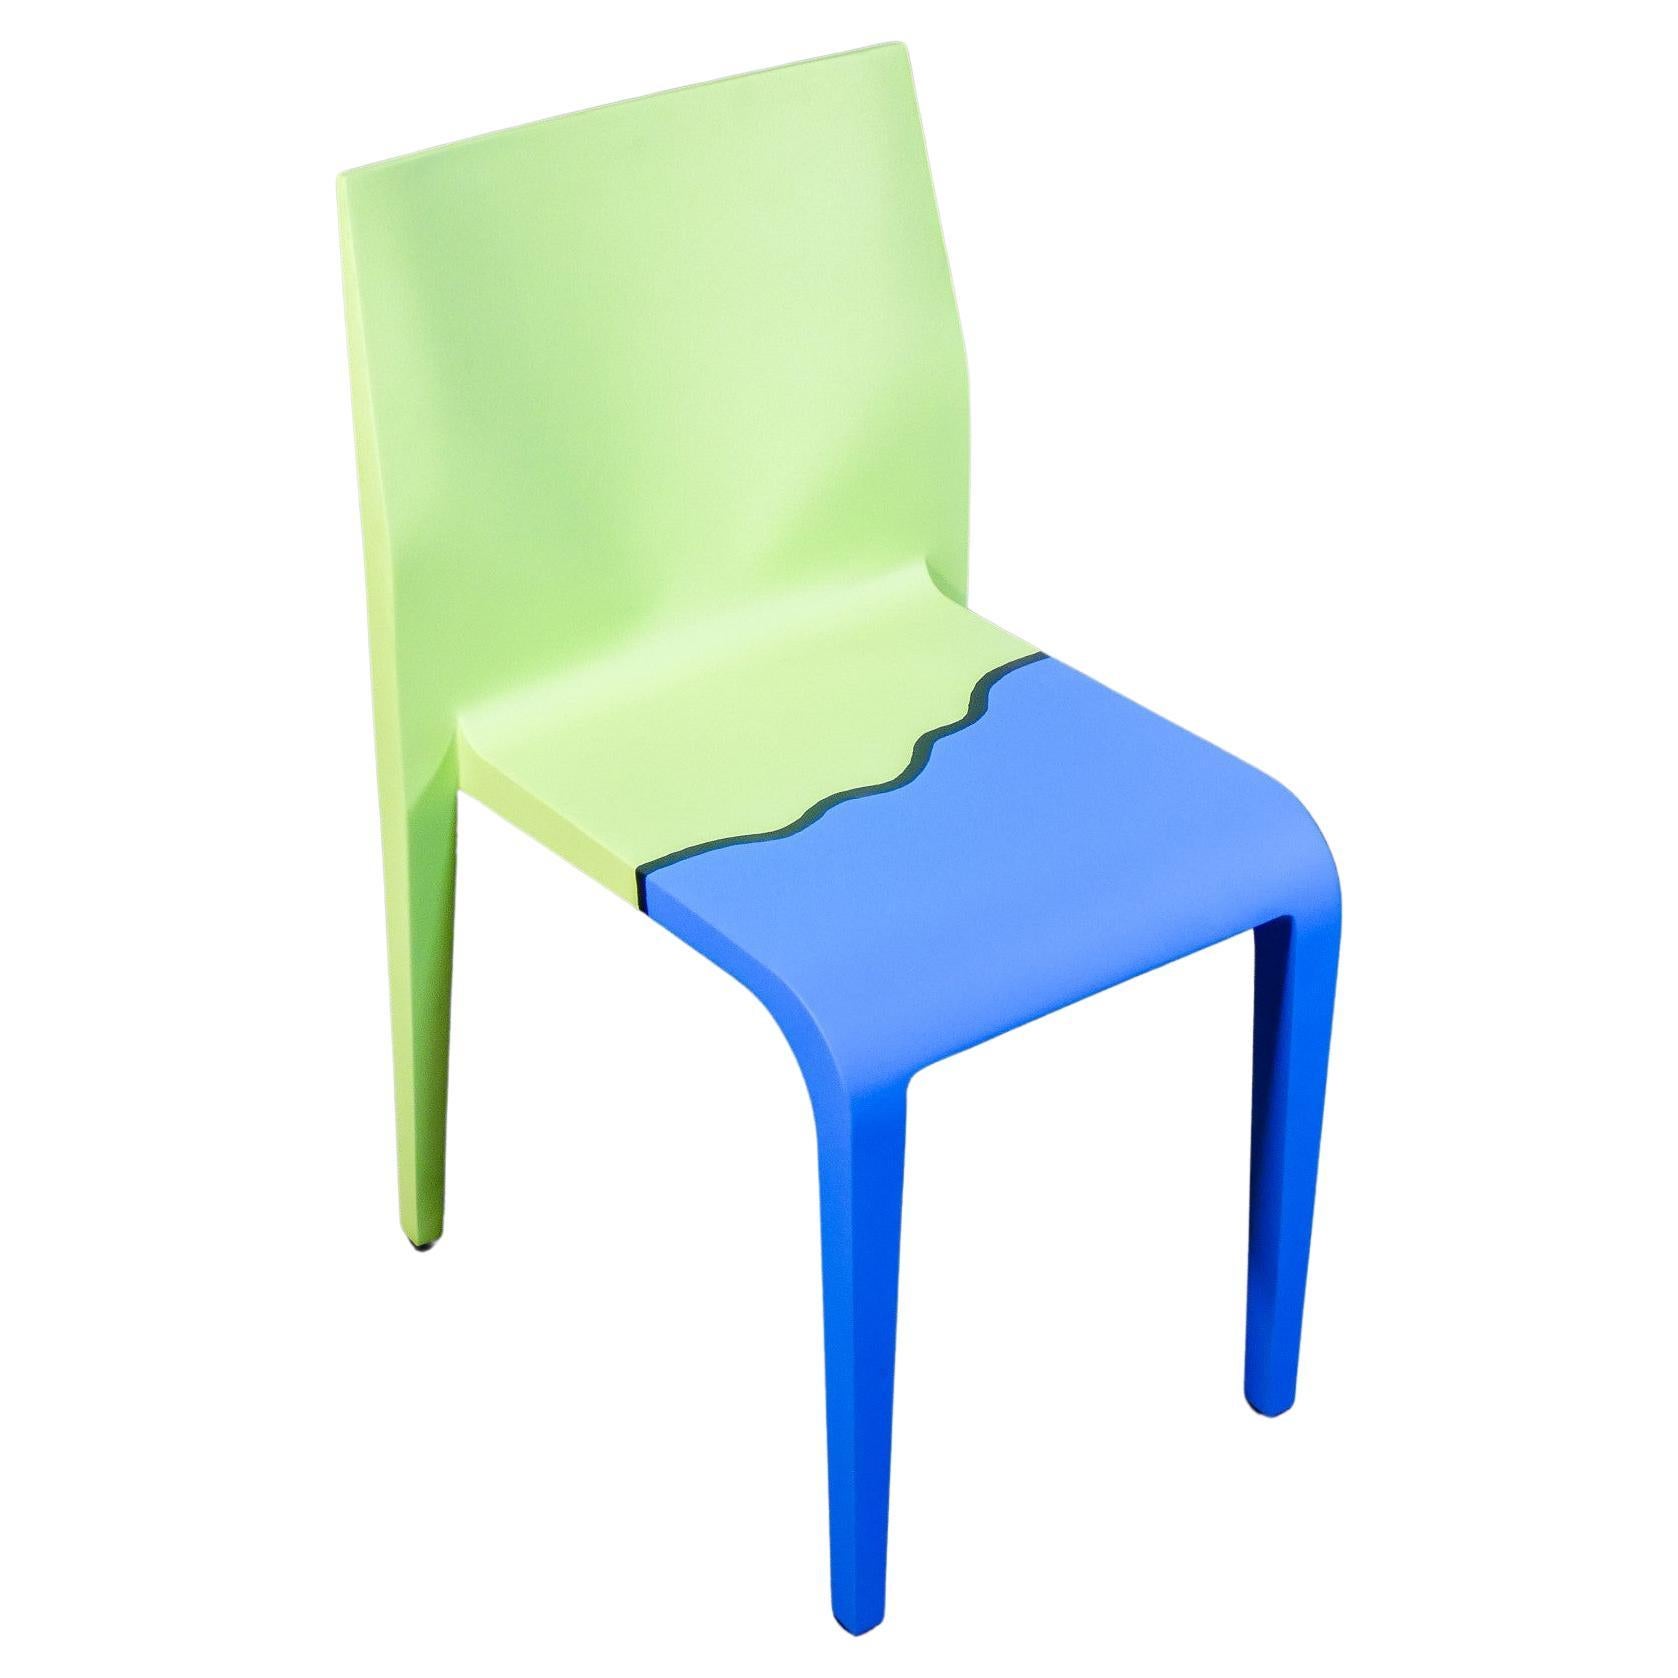 Laleggera Alias chair, part of the work "Mezzoterra Mezzomare" by M. PISTOLETTO For Sale